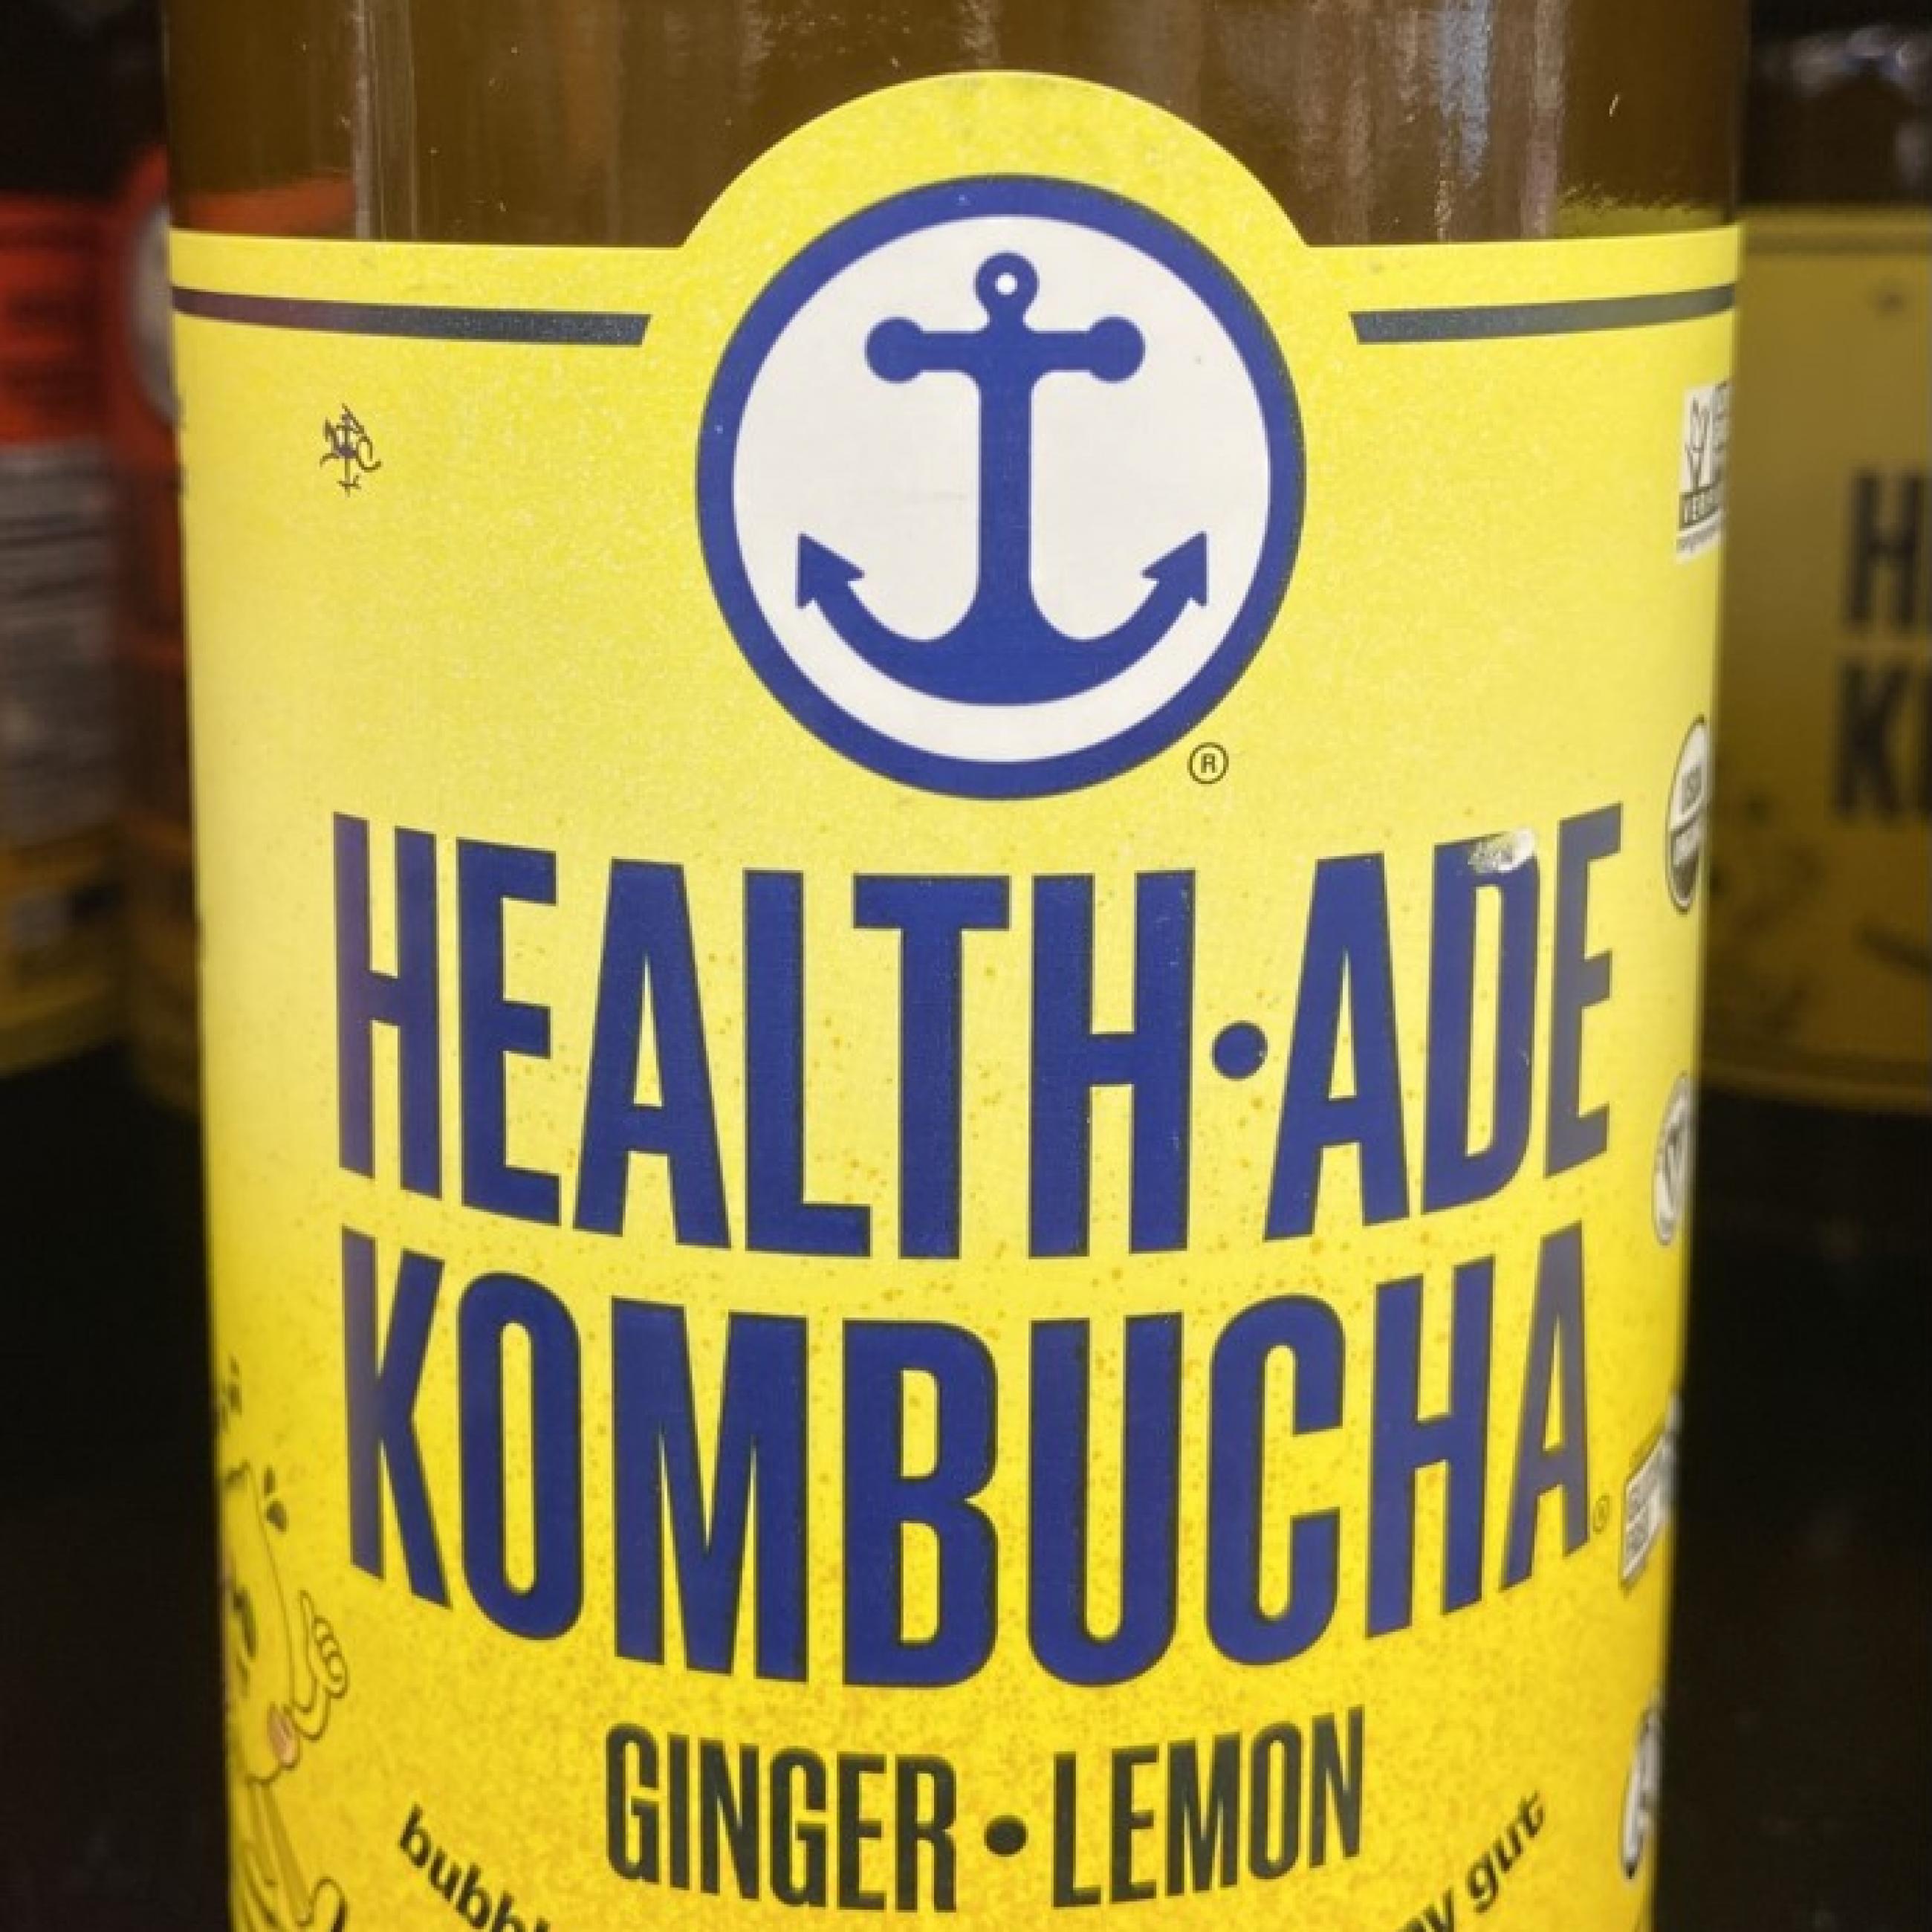 A bottle of Health-Ade Ginger Lemon Kombucha